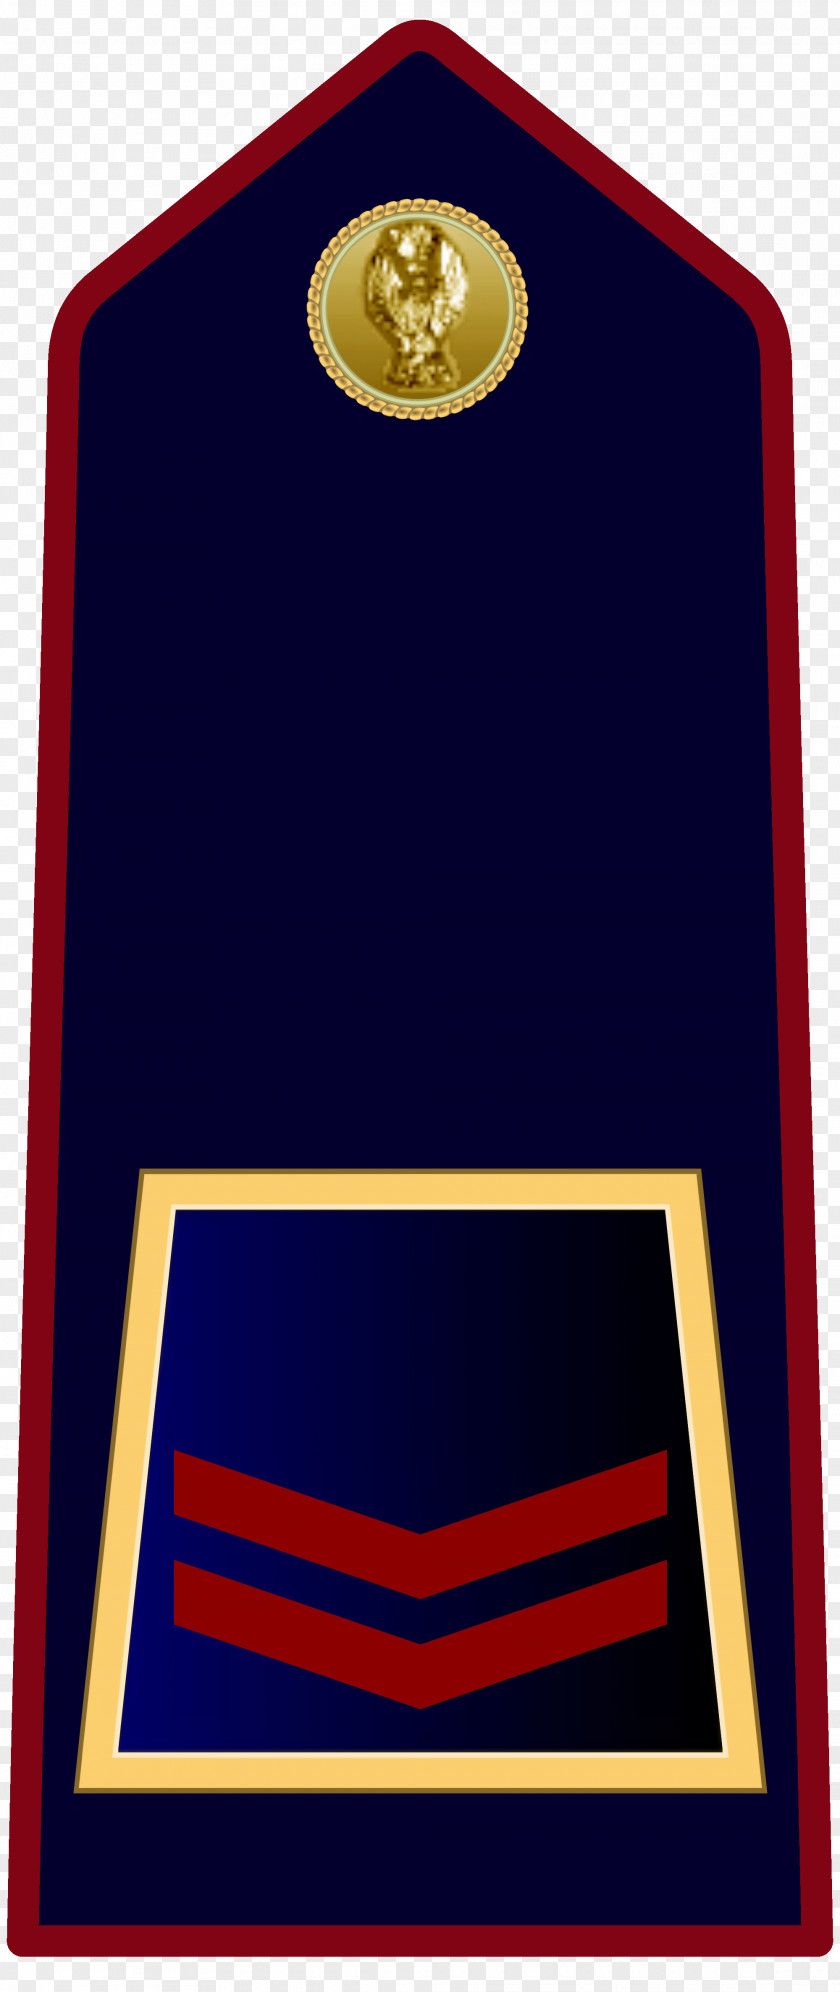 Police Sostituto Commissario Ispettore Superiore Qualifiche Della Polizia Di Stato PNG